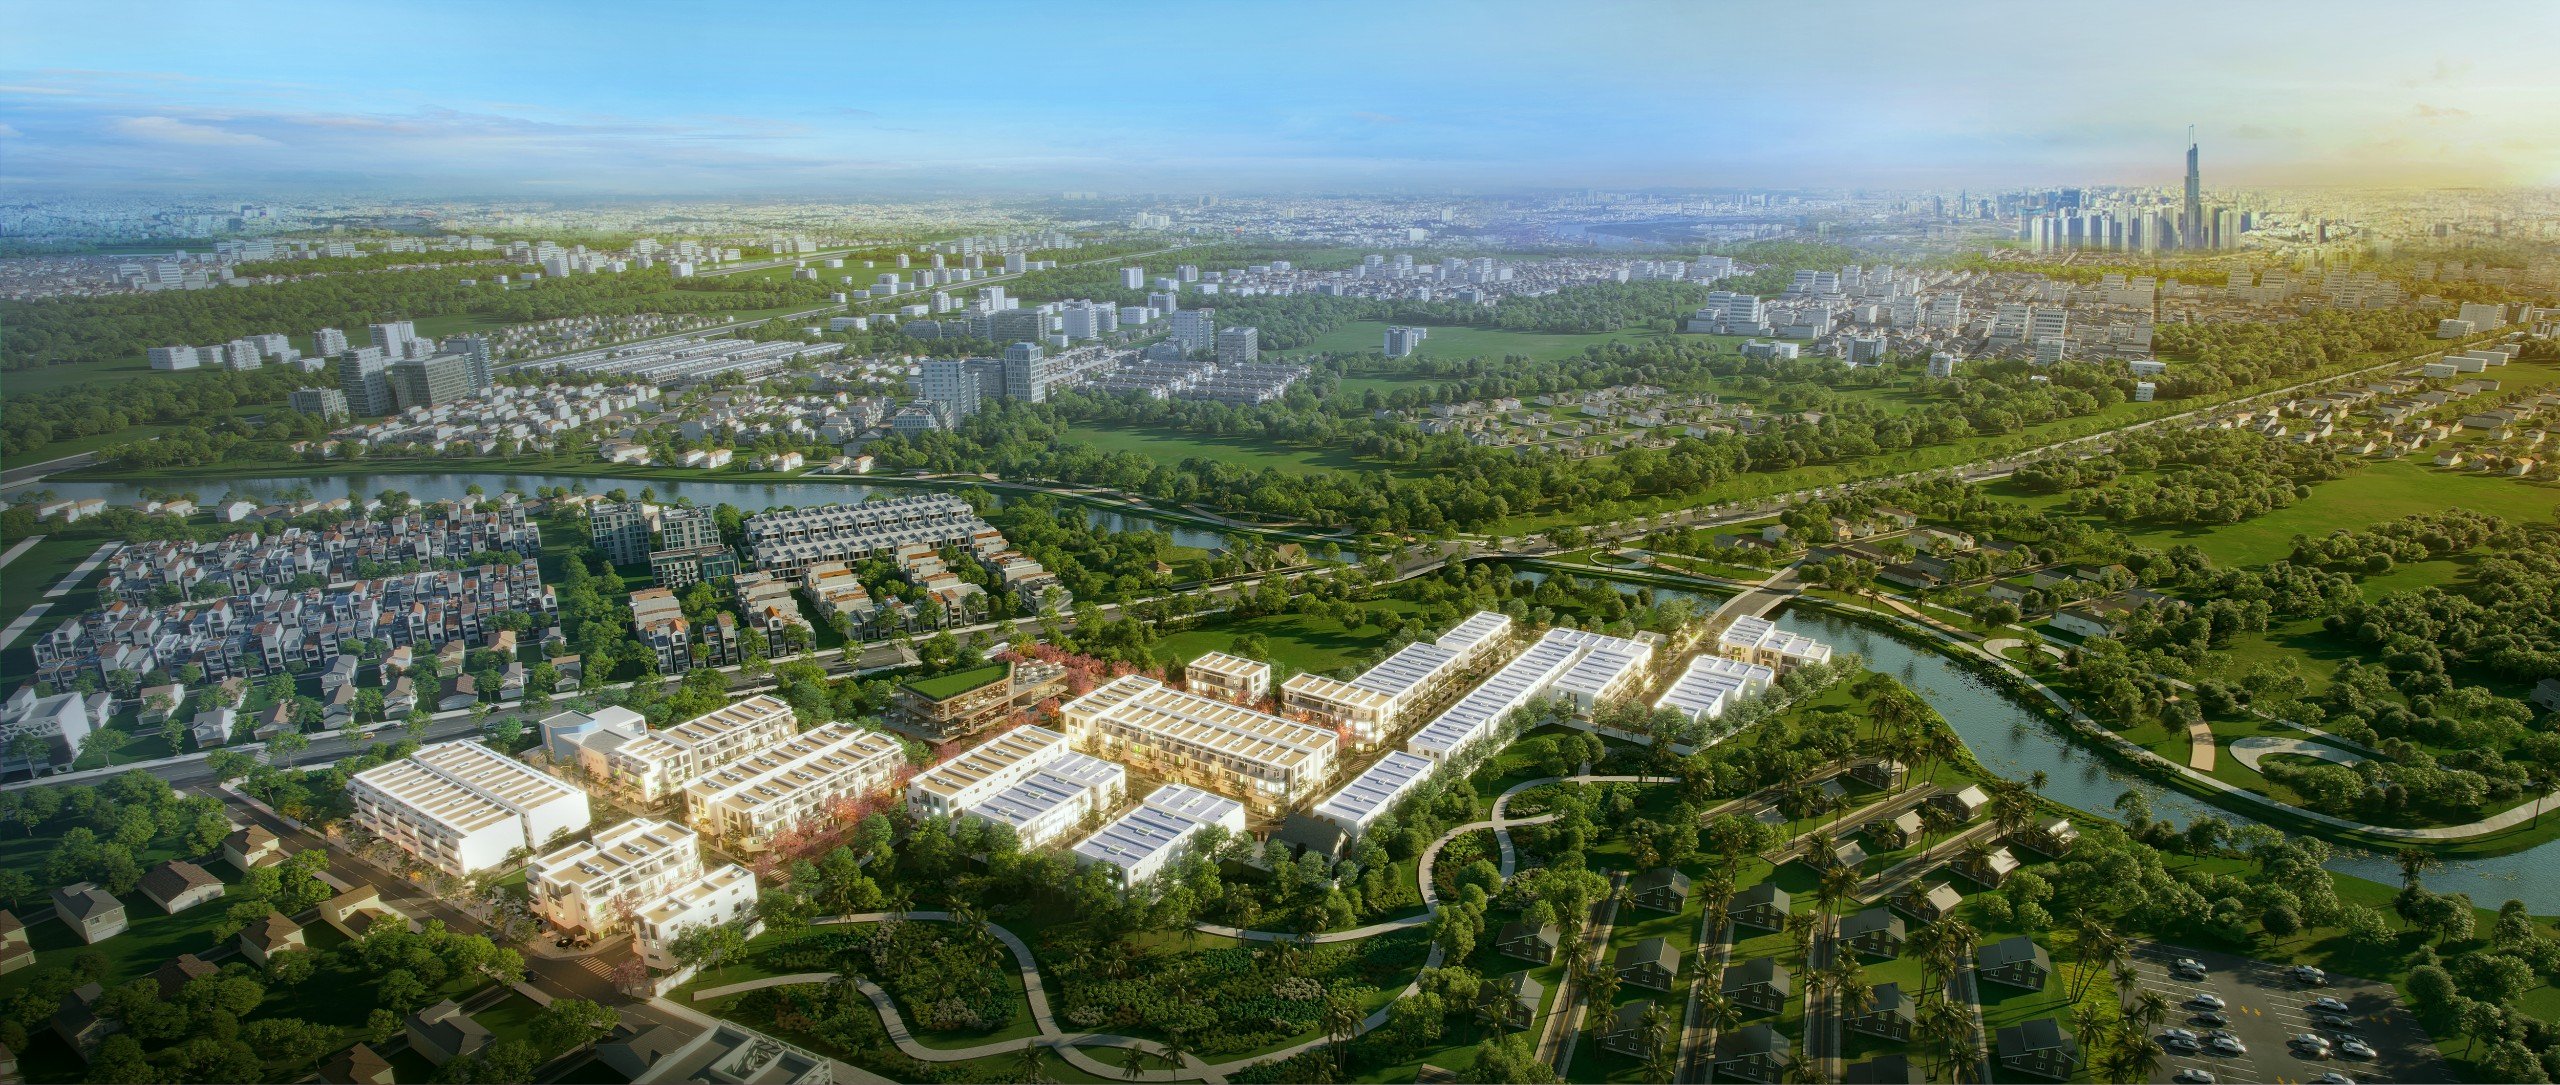 Dự án The Larita: "Multi Home" riêng biệt chuẩn xanh Singapore